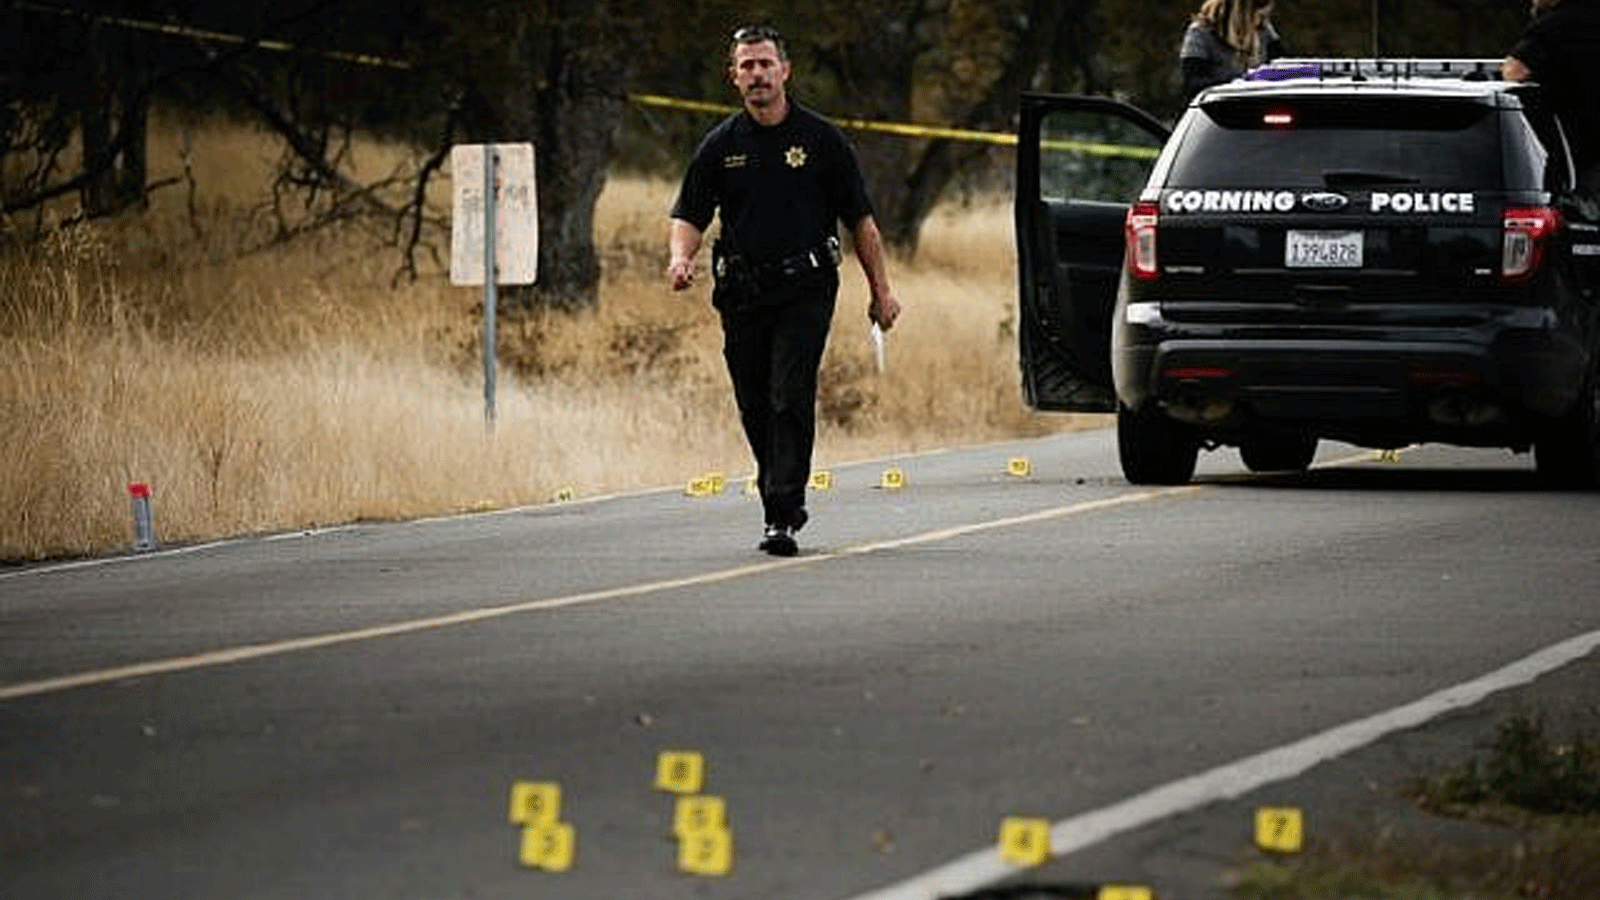 ضابط إنفاذ القانون يقف على مسرح جريمة بعد إطلاق النار في كاليفورنيا